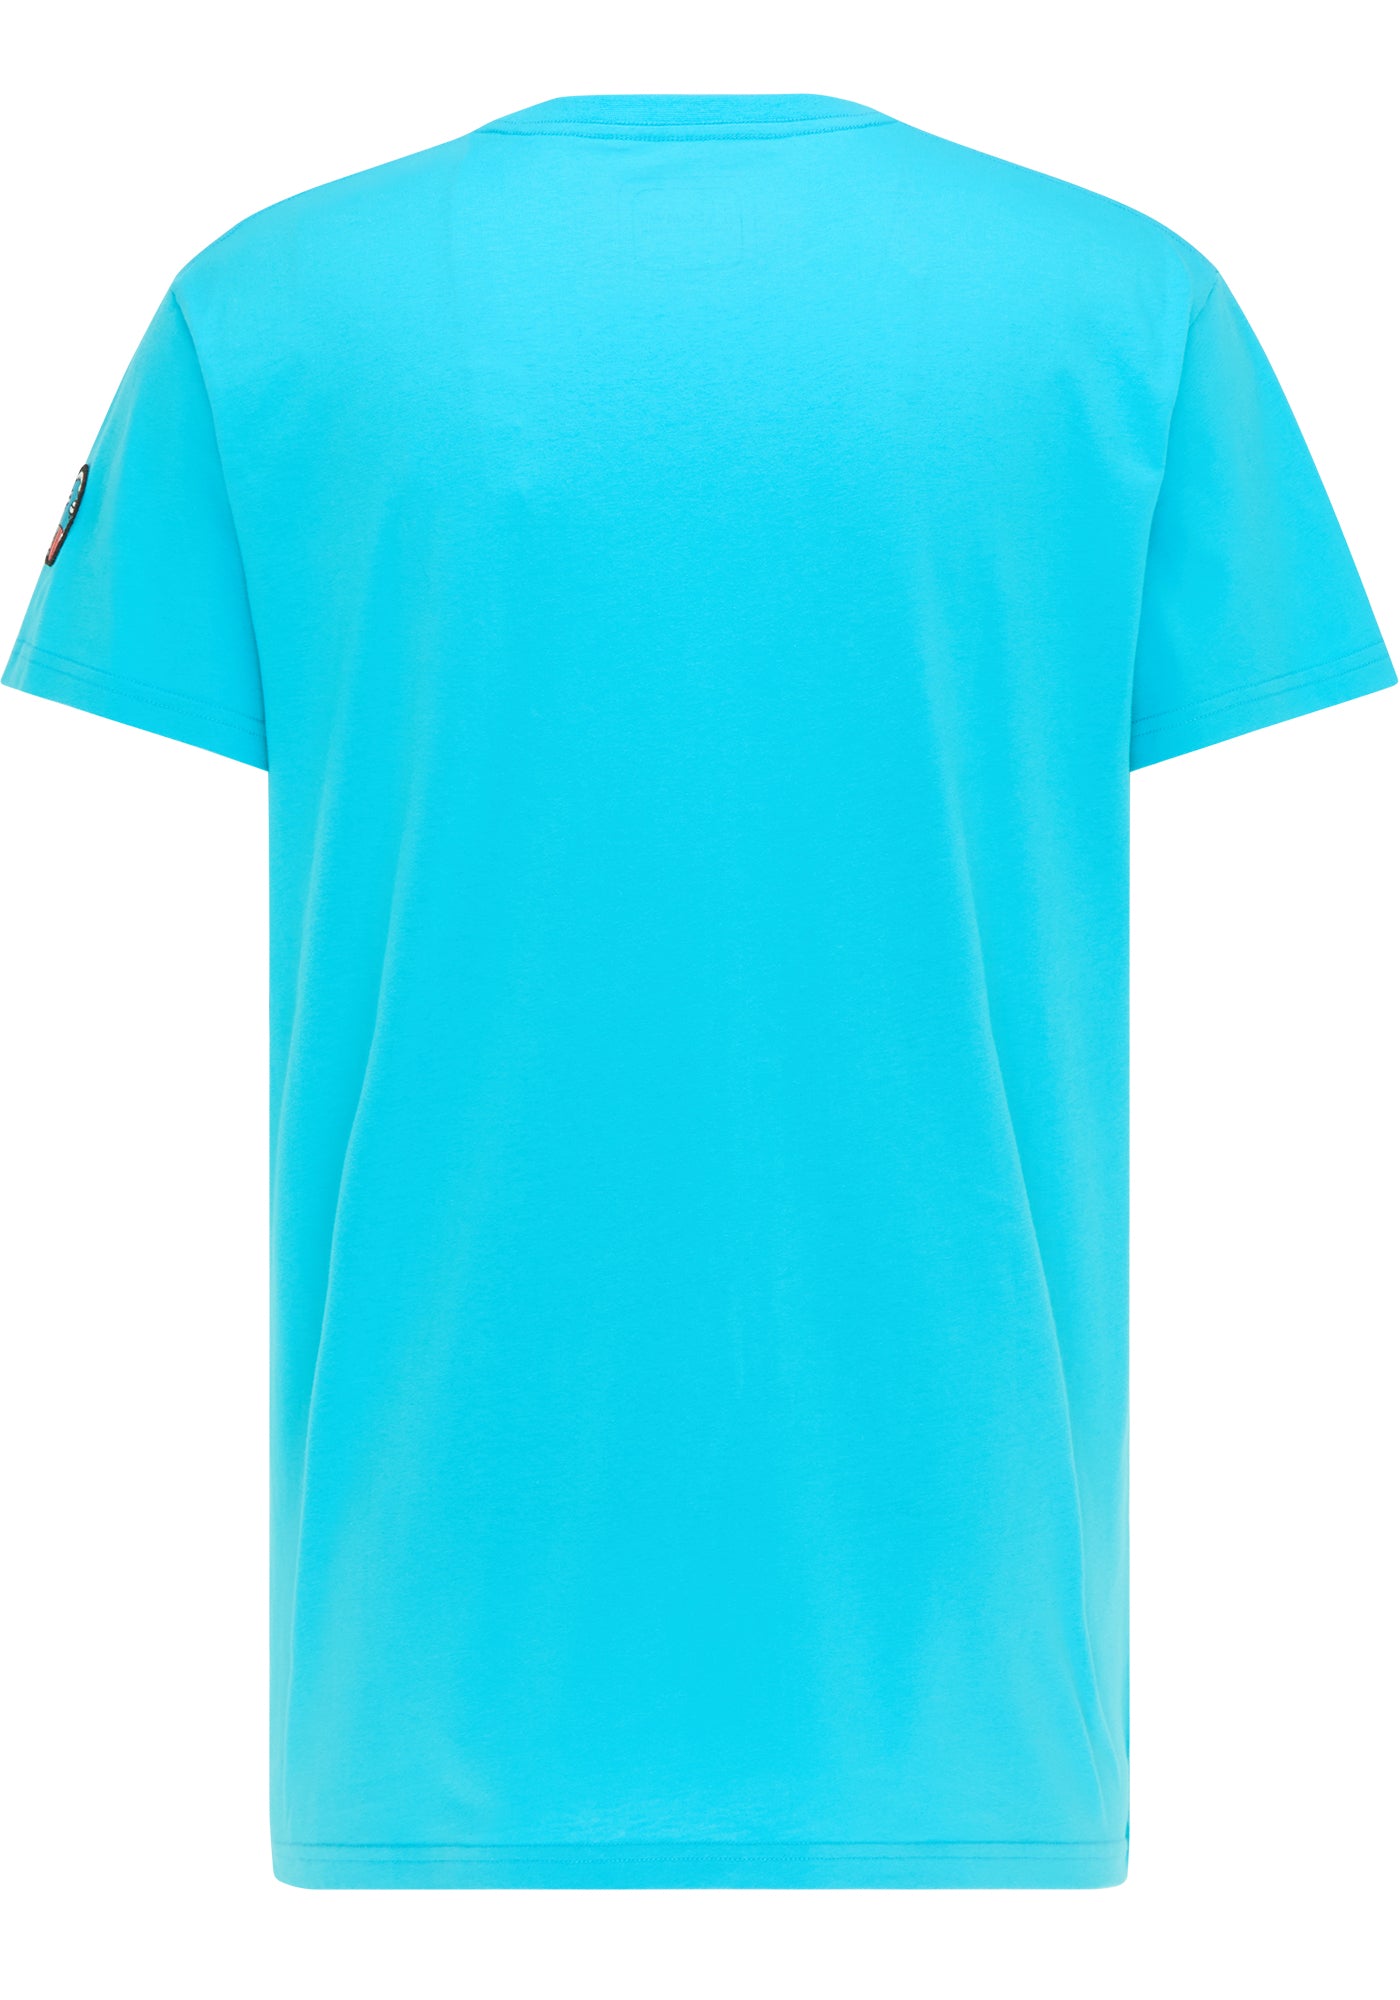 SOMWR INFLUENCER TEE T-Shirt BLU003